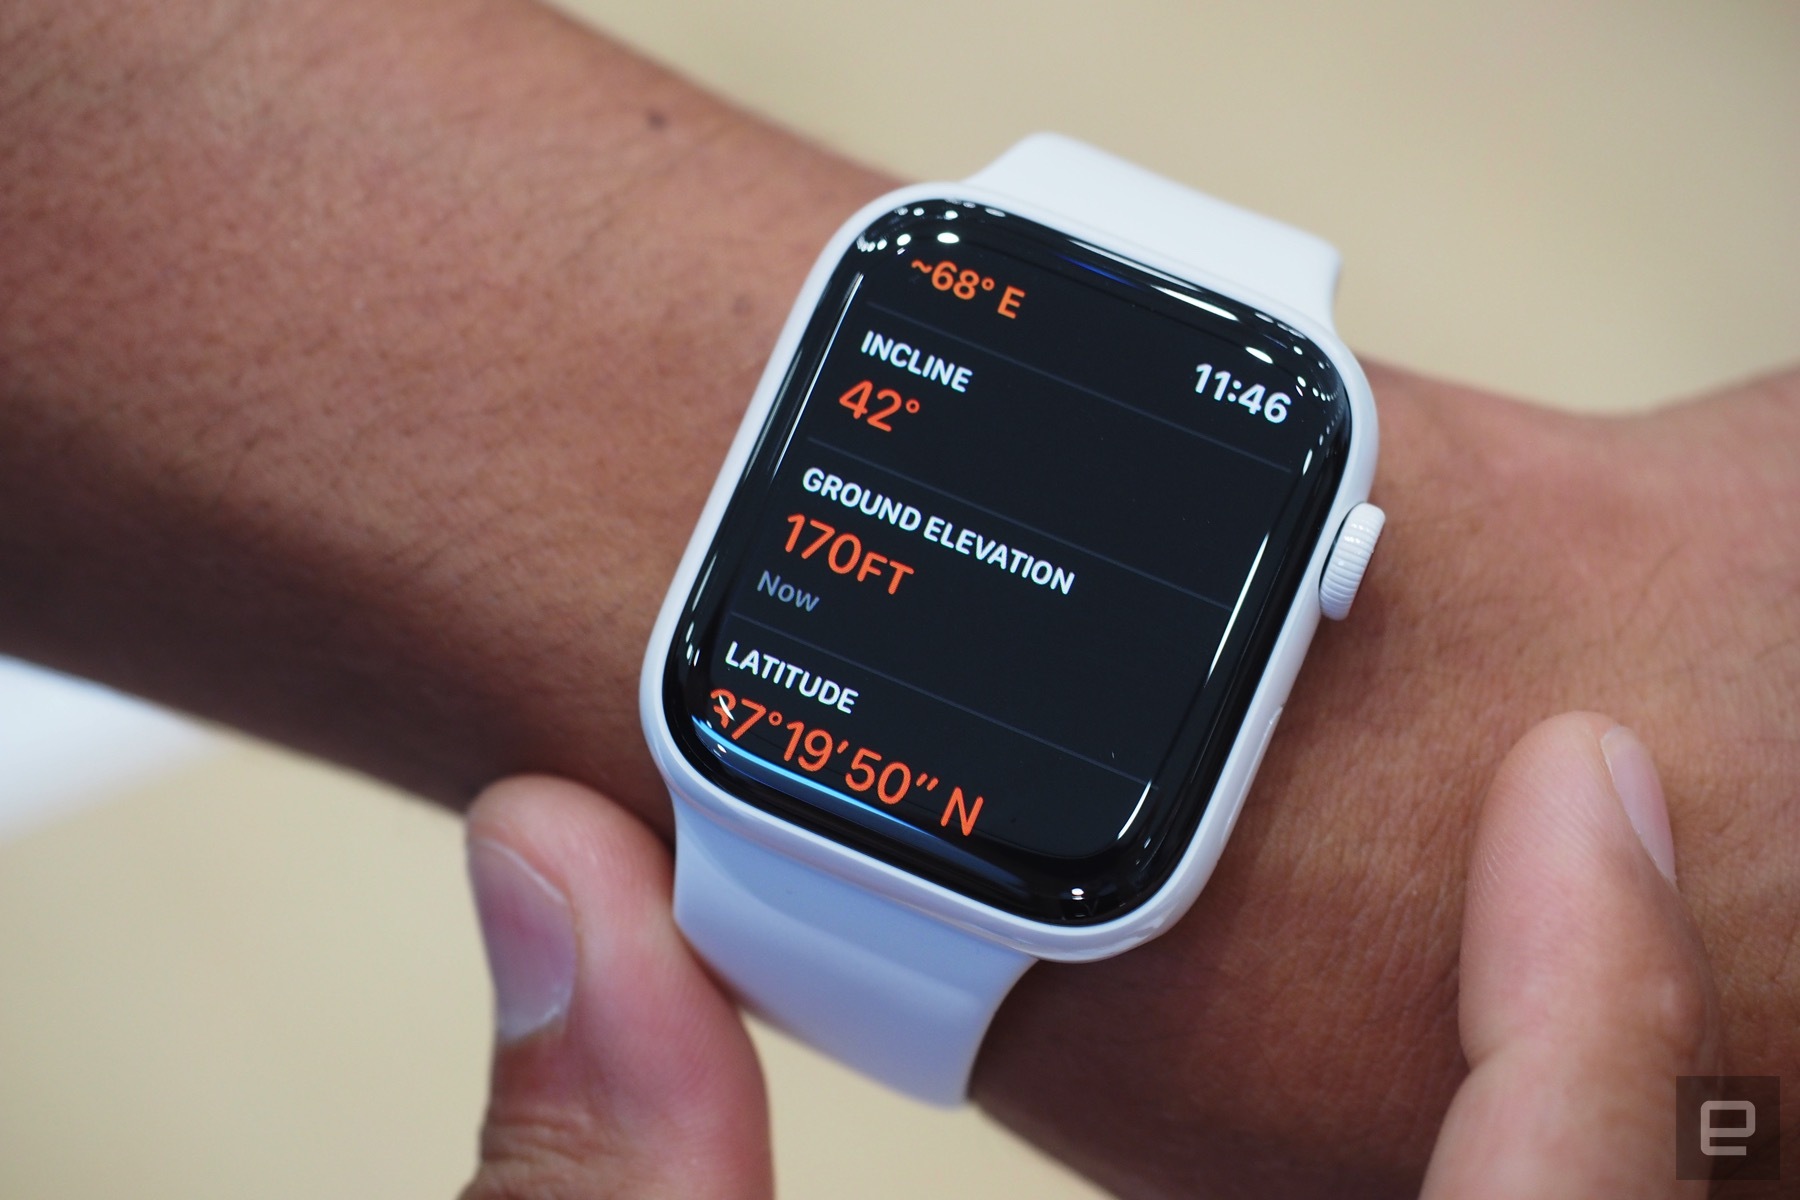 Cận cảnh Apple Watch Series 5: Thiết kế tương tự
Apple Watch Series 4, thay đổi vật liệu chế tác và bổ sung
Always on Display